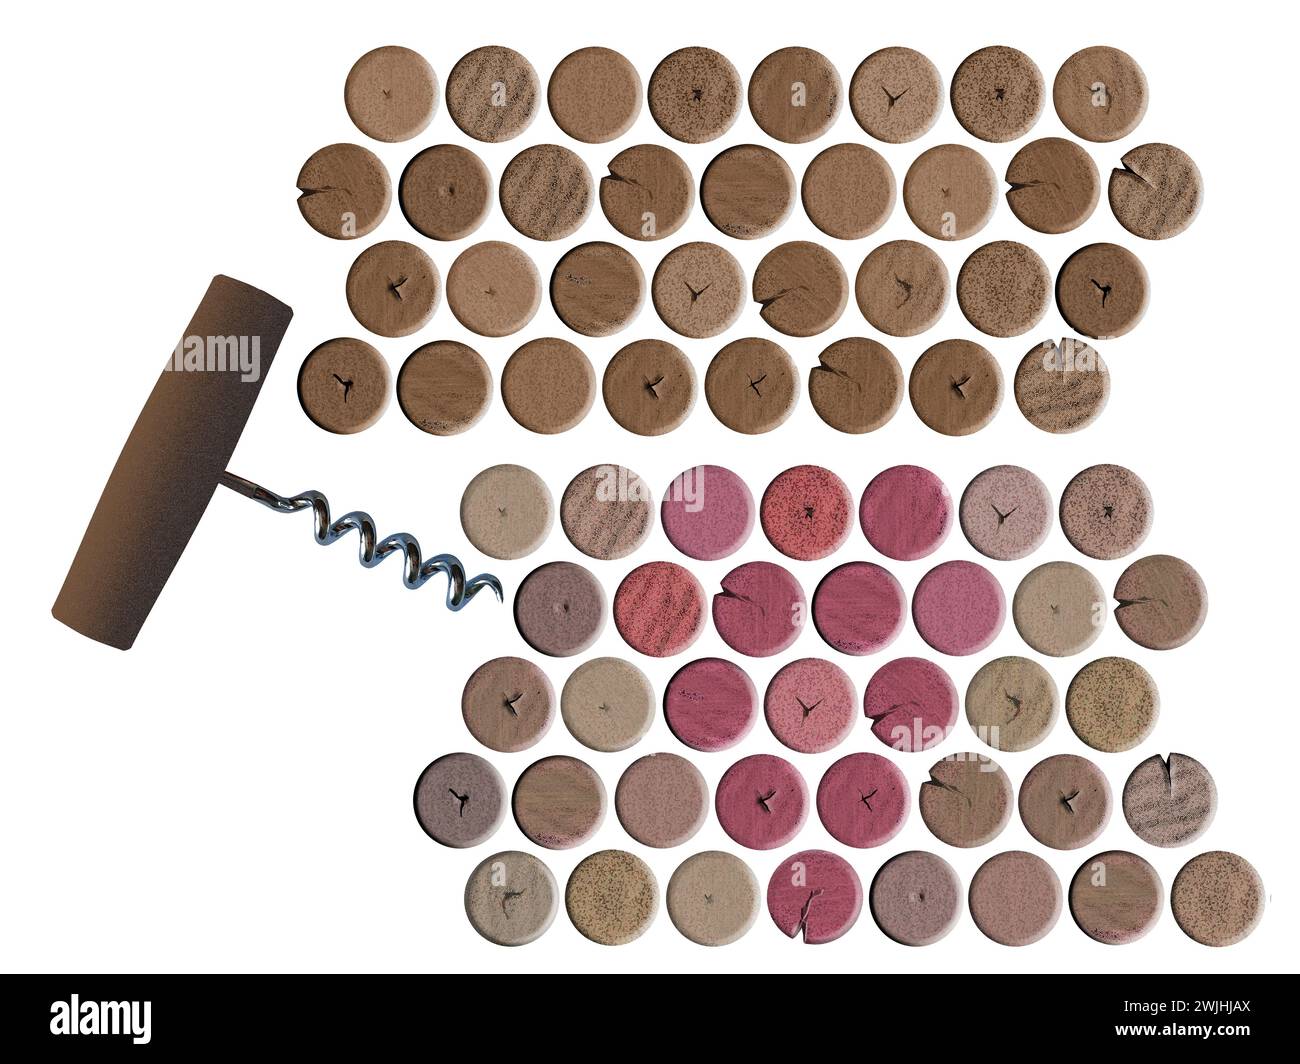 Weinkorken und verwandte Gegenstände werden als 3-D-Illustrationen angesehen, die als grafische Ressourcen verwendet werden können. Stockfoto